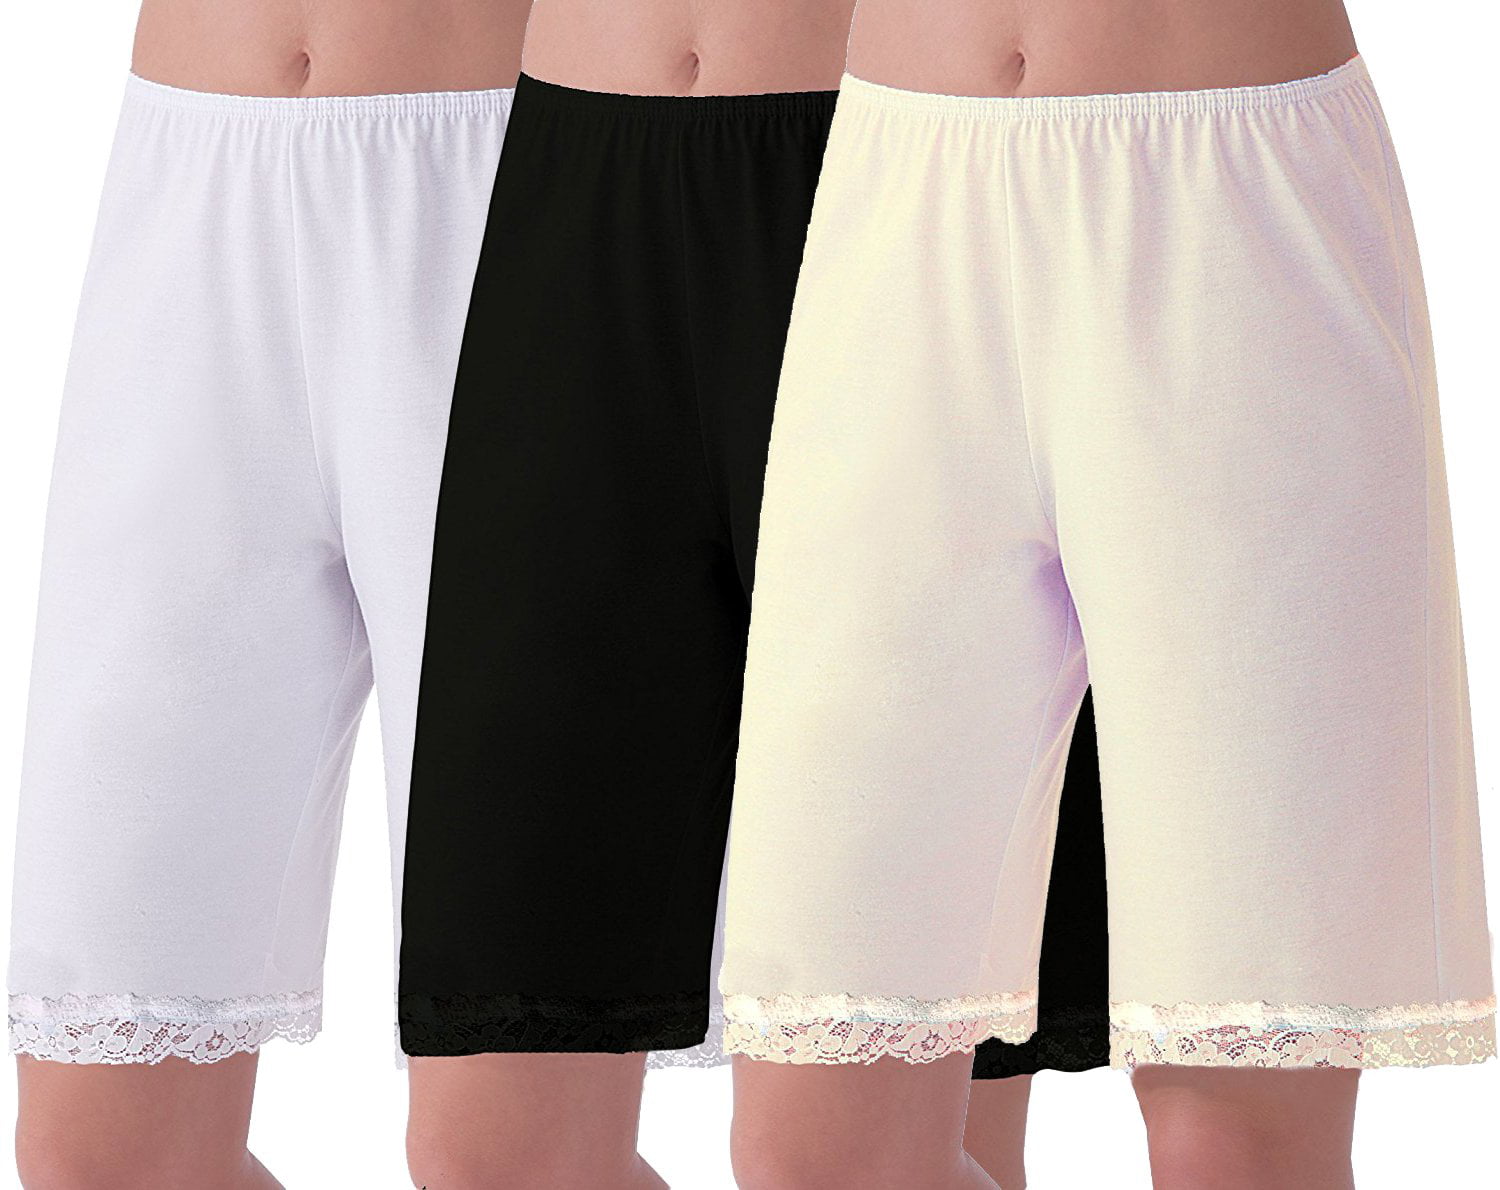 Women's Cotton Pant Slip With Lace Trim - Walmart.com